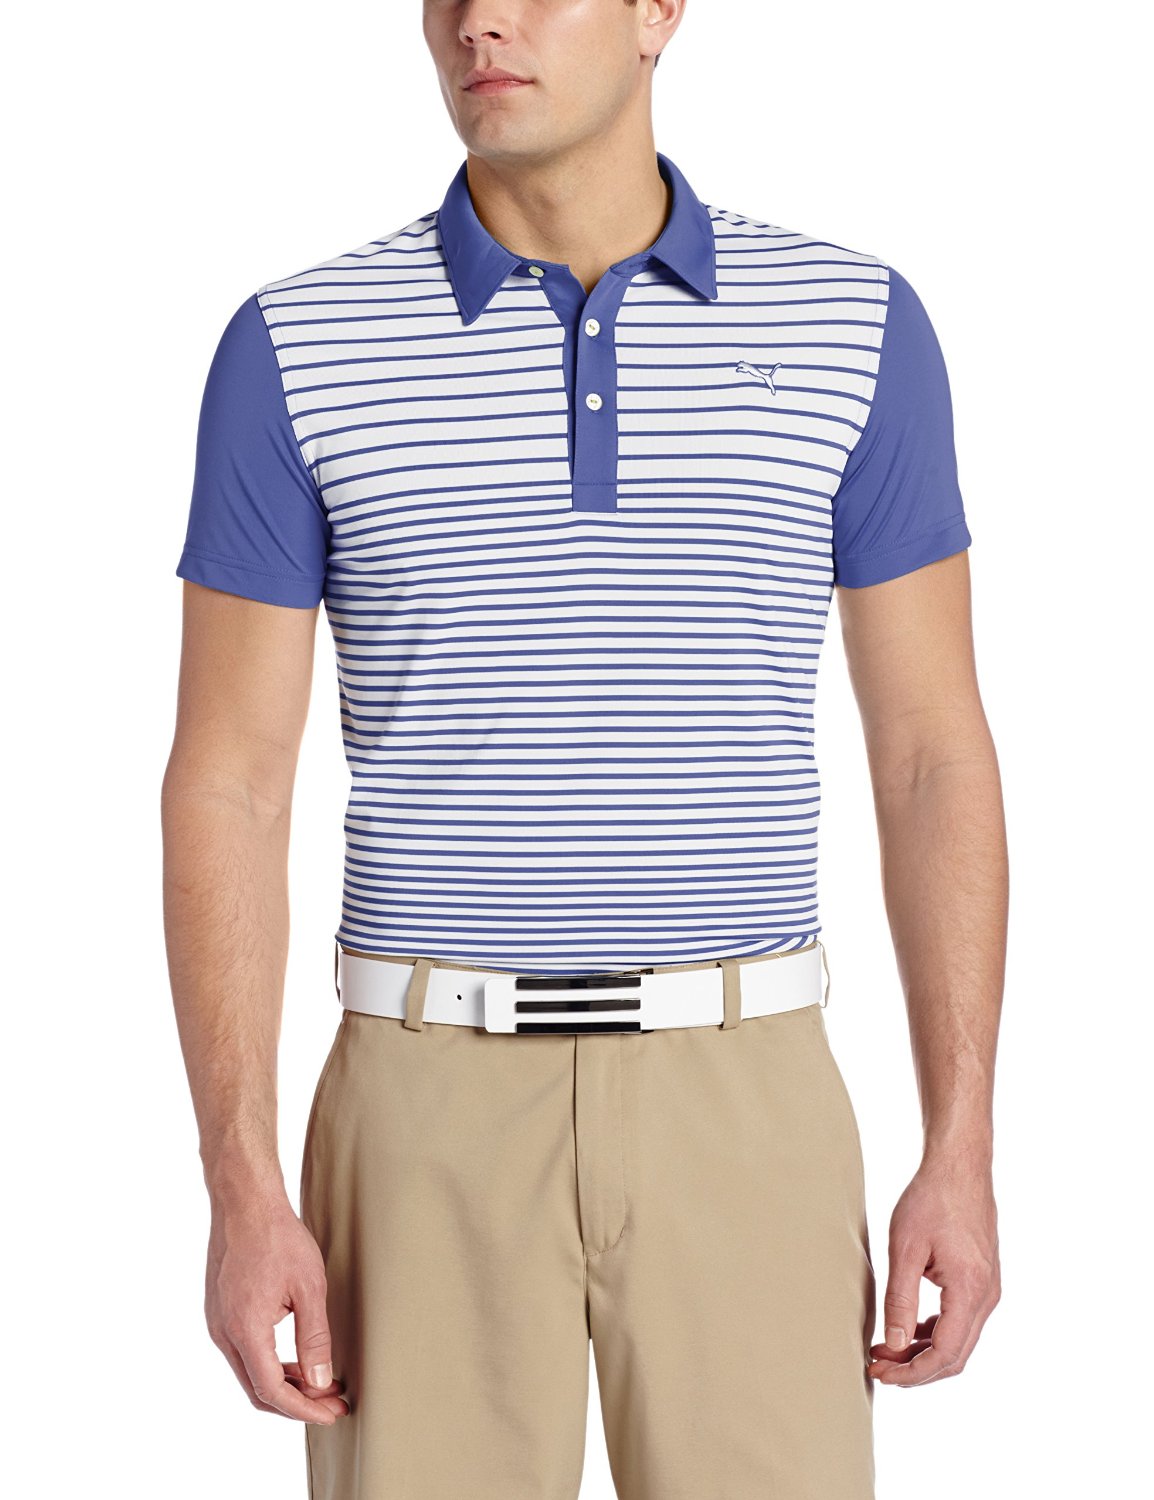 Puma Mens Yarn Dye Stripe Block Golf Polo Shirts